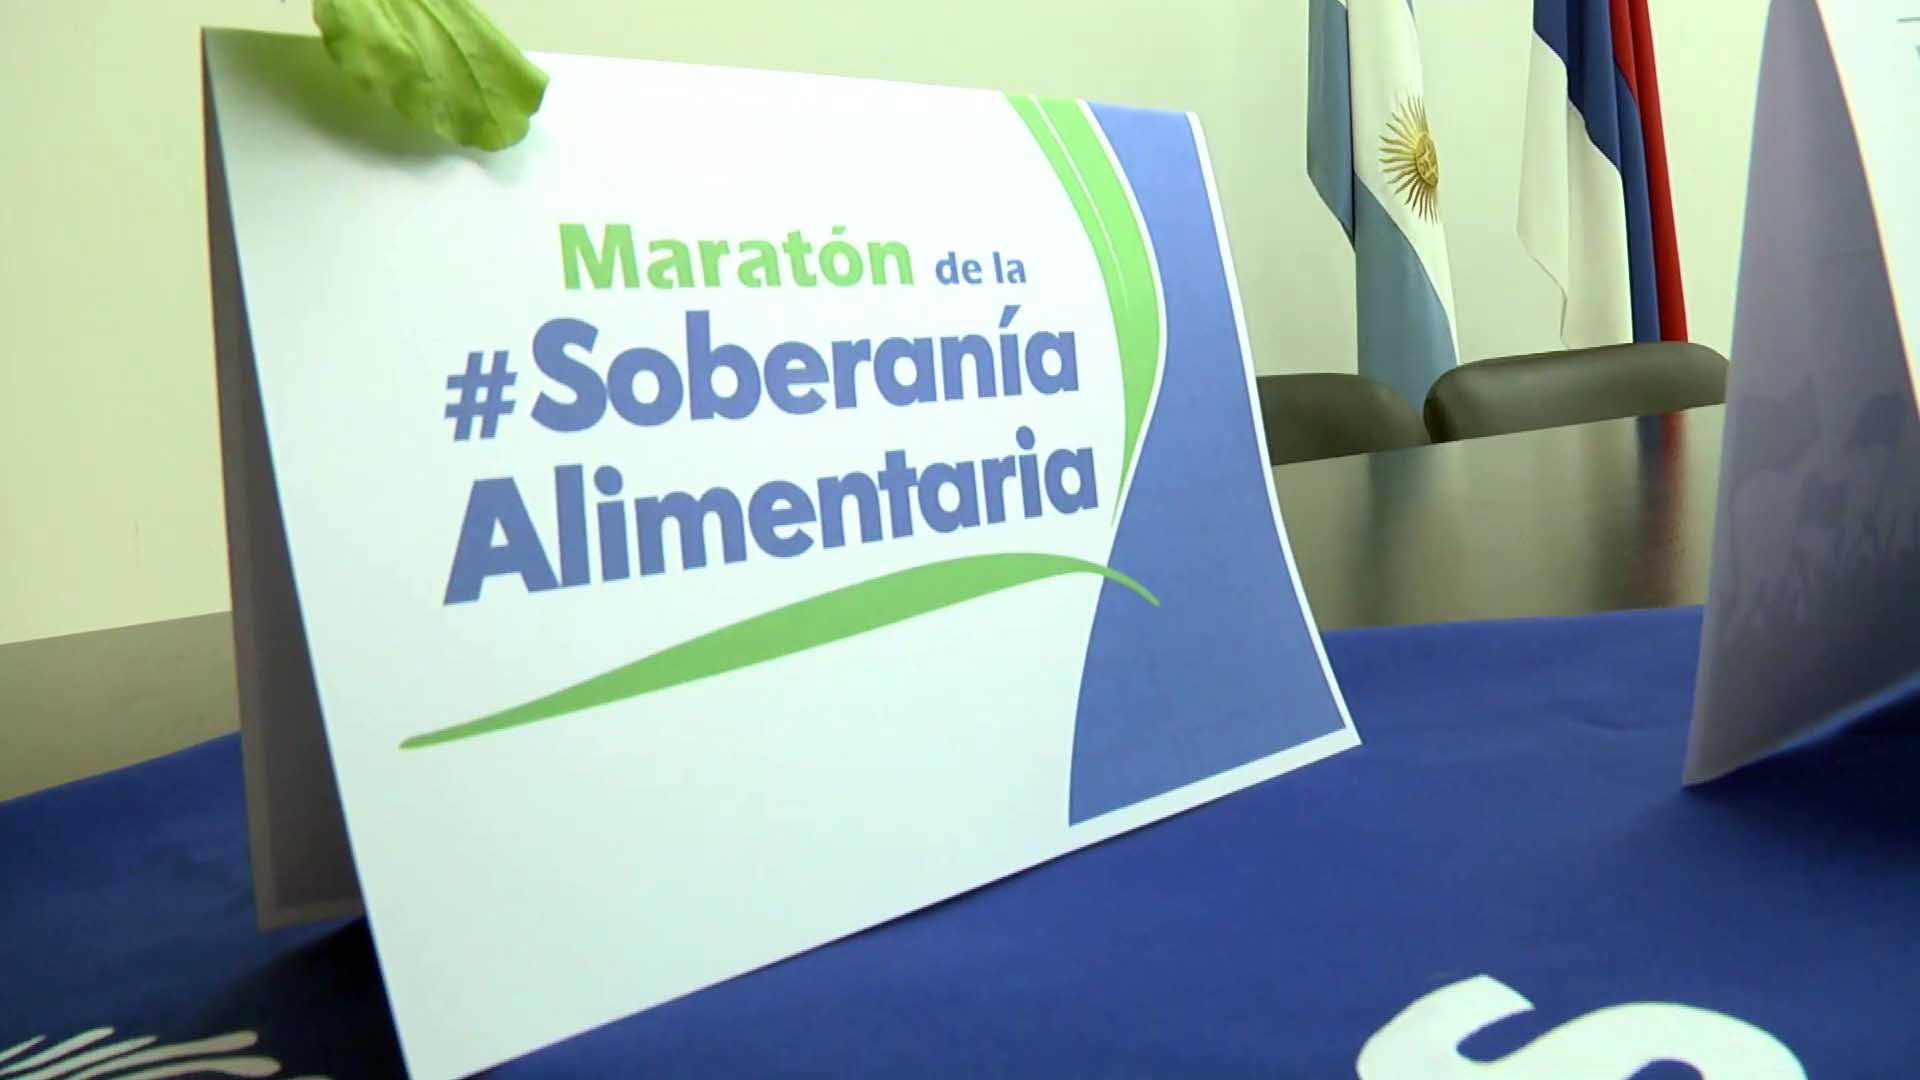 Anunciaron la maratón de la Soberanía Alimentaria y Plaza Agroecológica